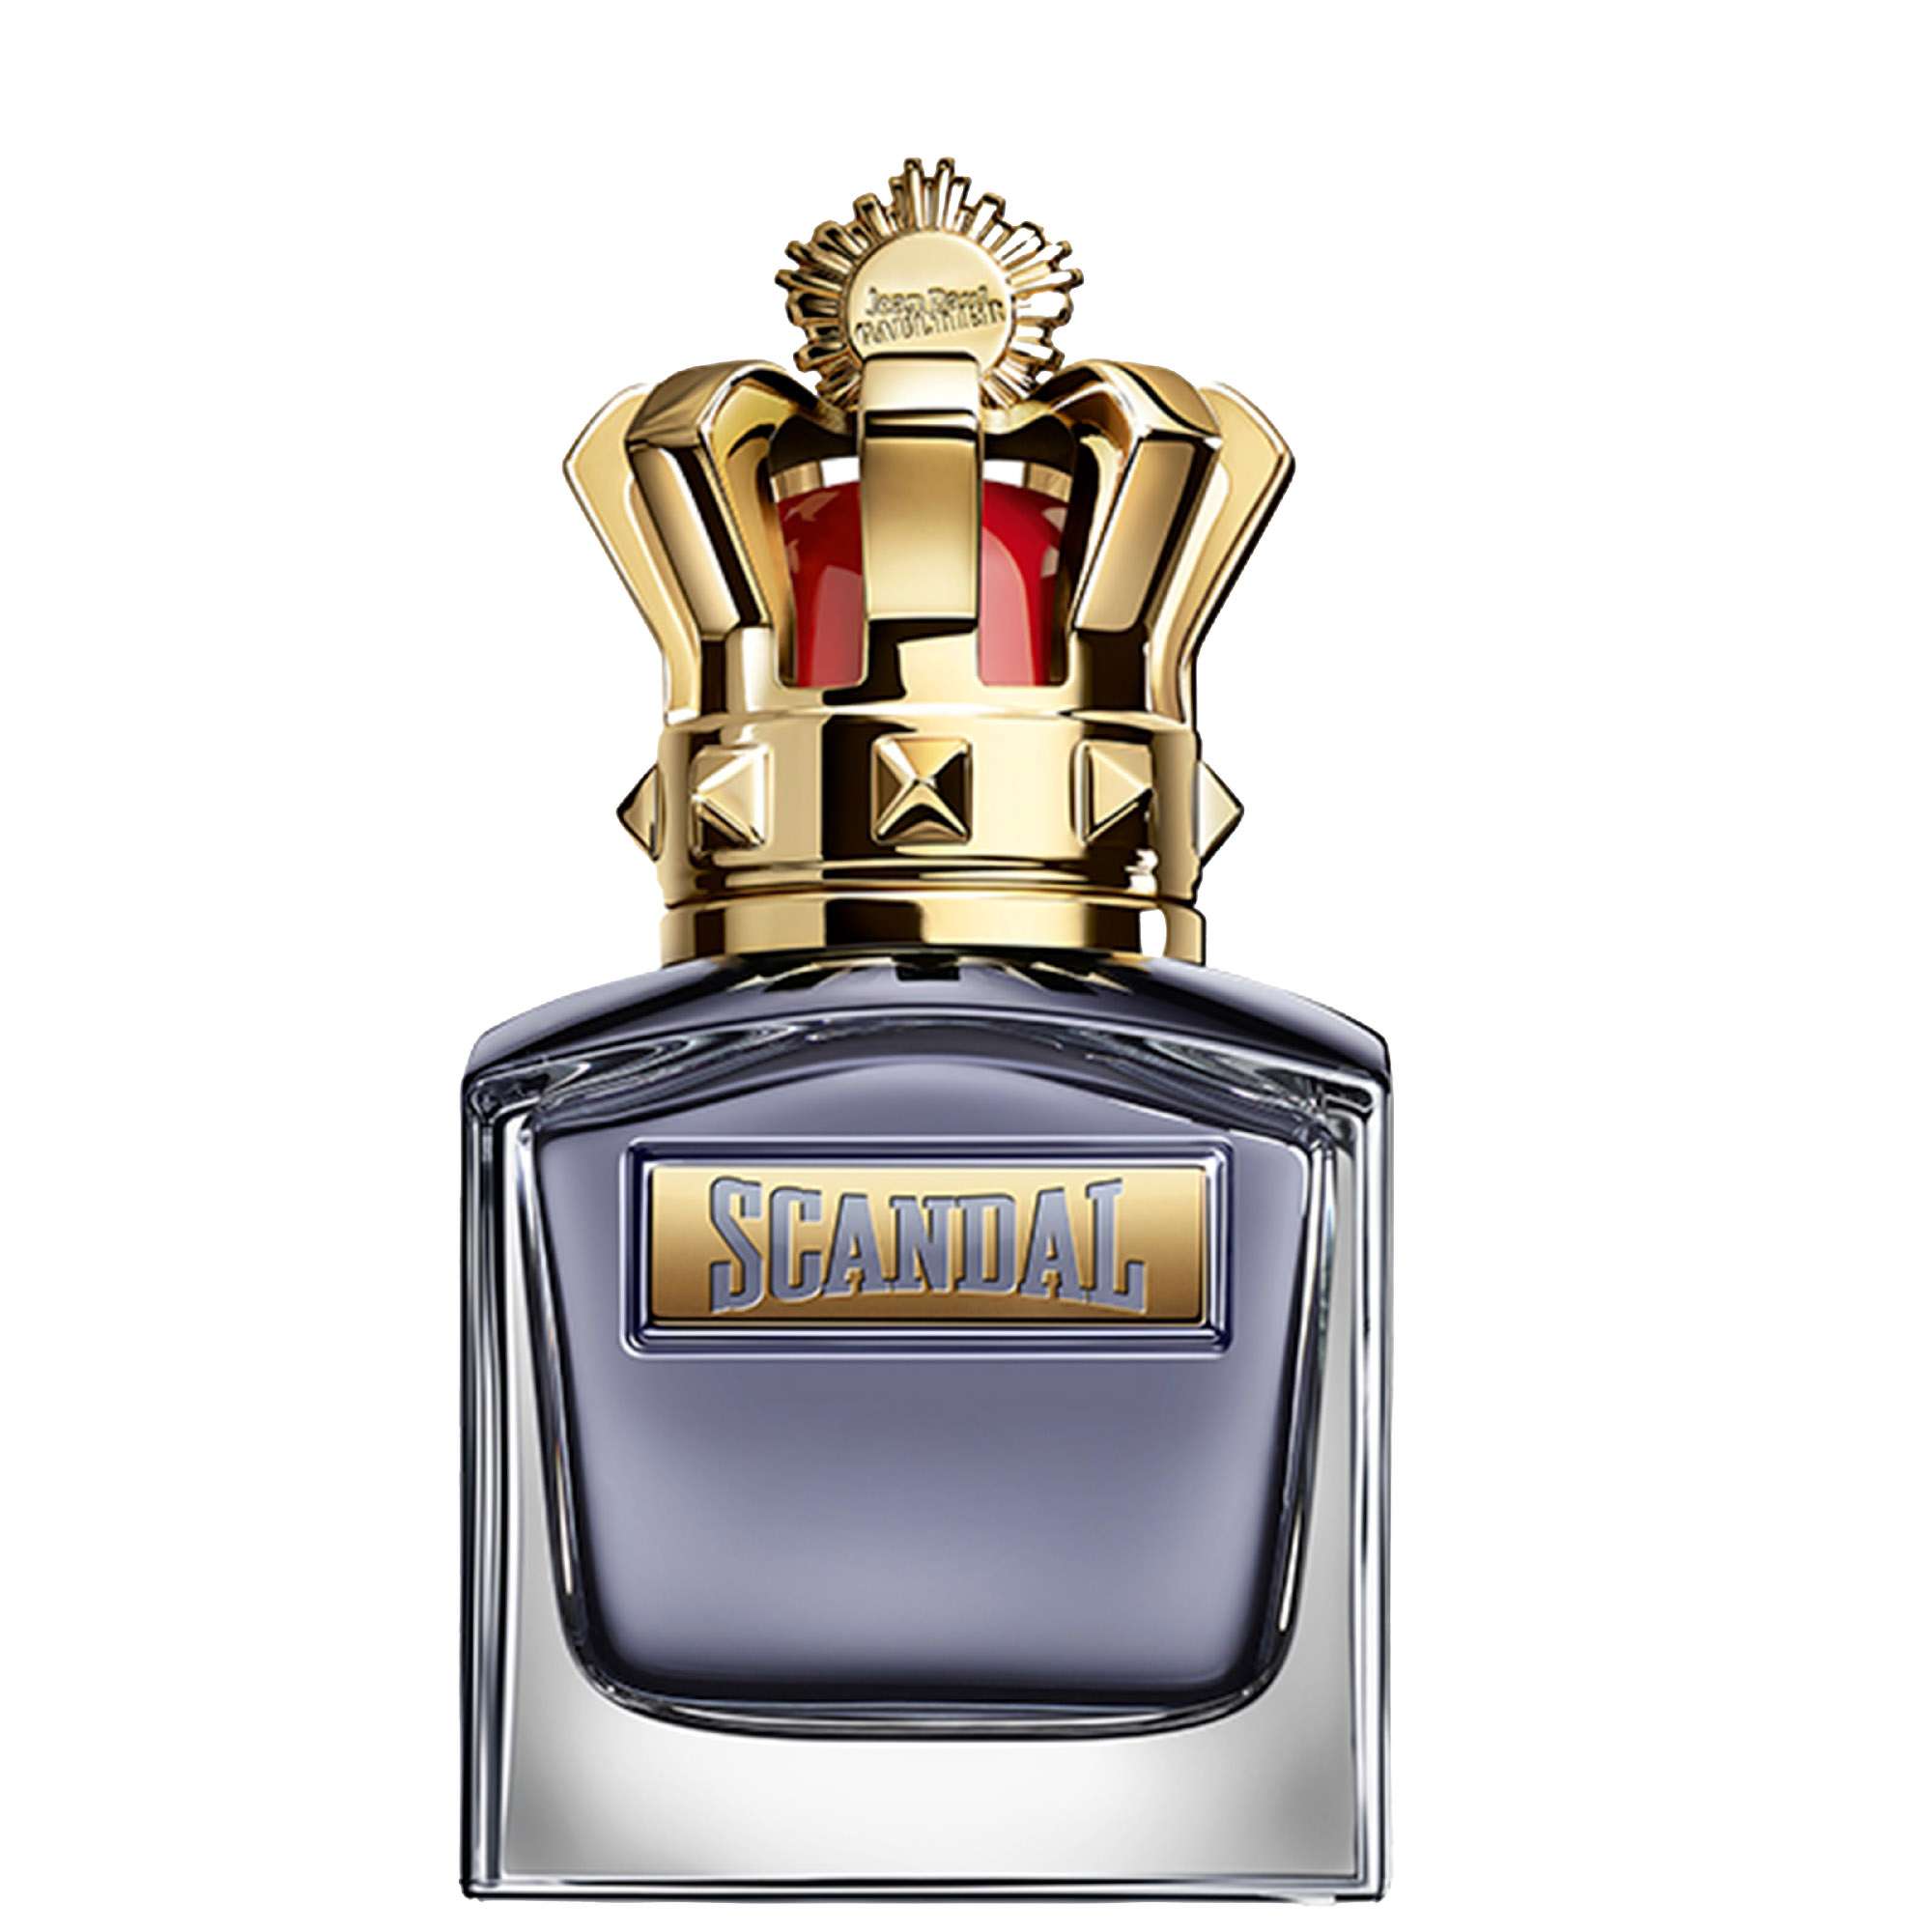 Photos - Men's Fragrance Jean Paul Gaultier Scandal Pour Homme Eau de Toilette 50ml 